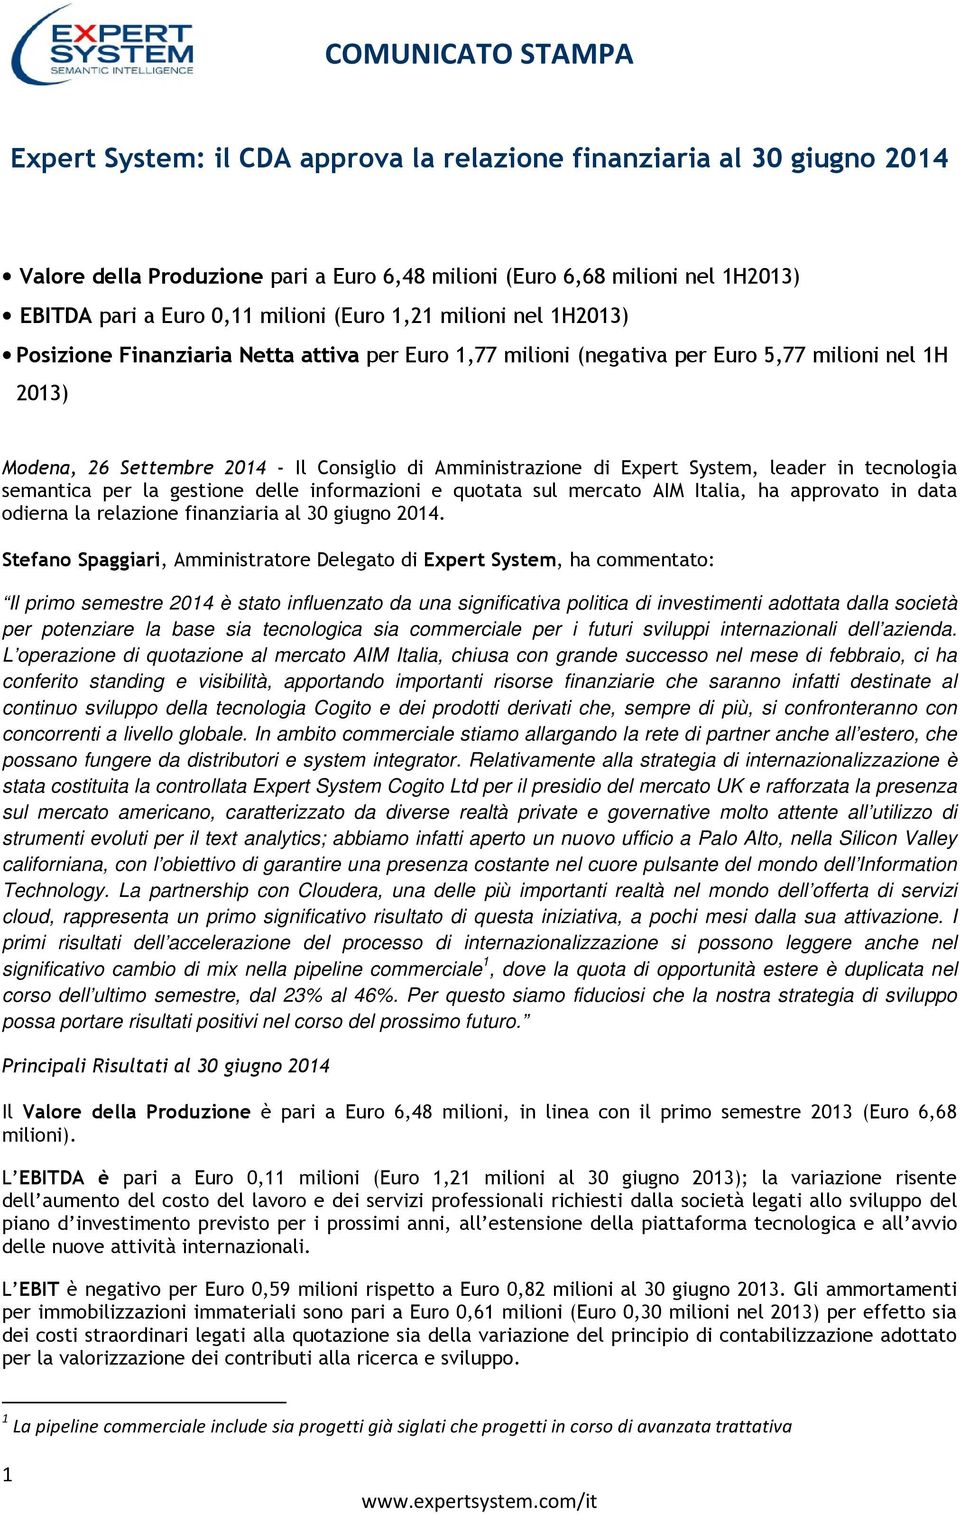 leader in tecnologia semantica per la gestione delle informazioni e quotata sul mercato AIM Italia, ha approvato in data odierna la relazione finanziaria al 30 giugno 2014.